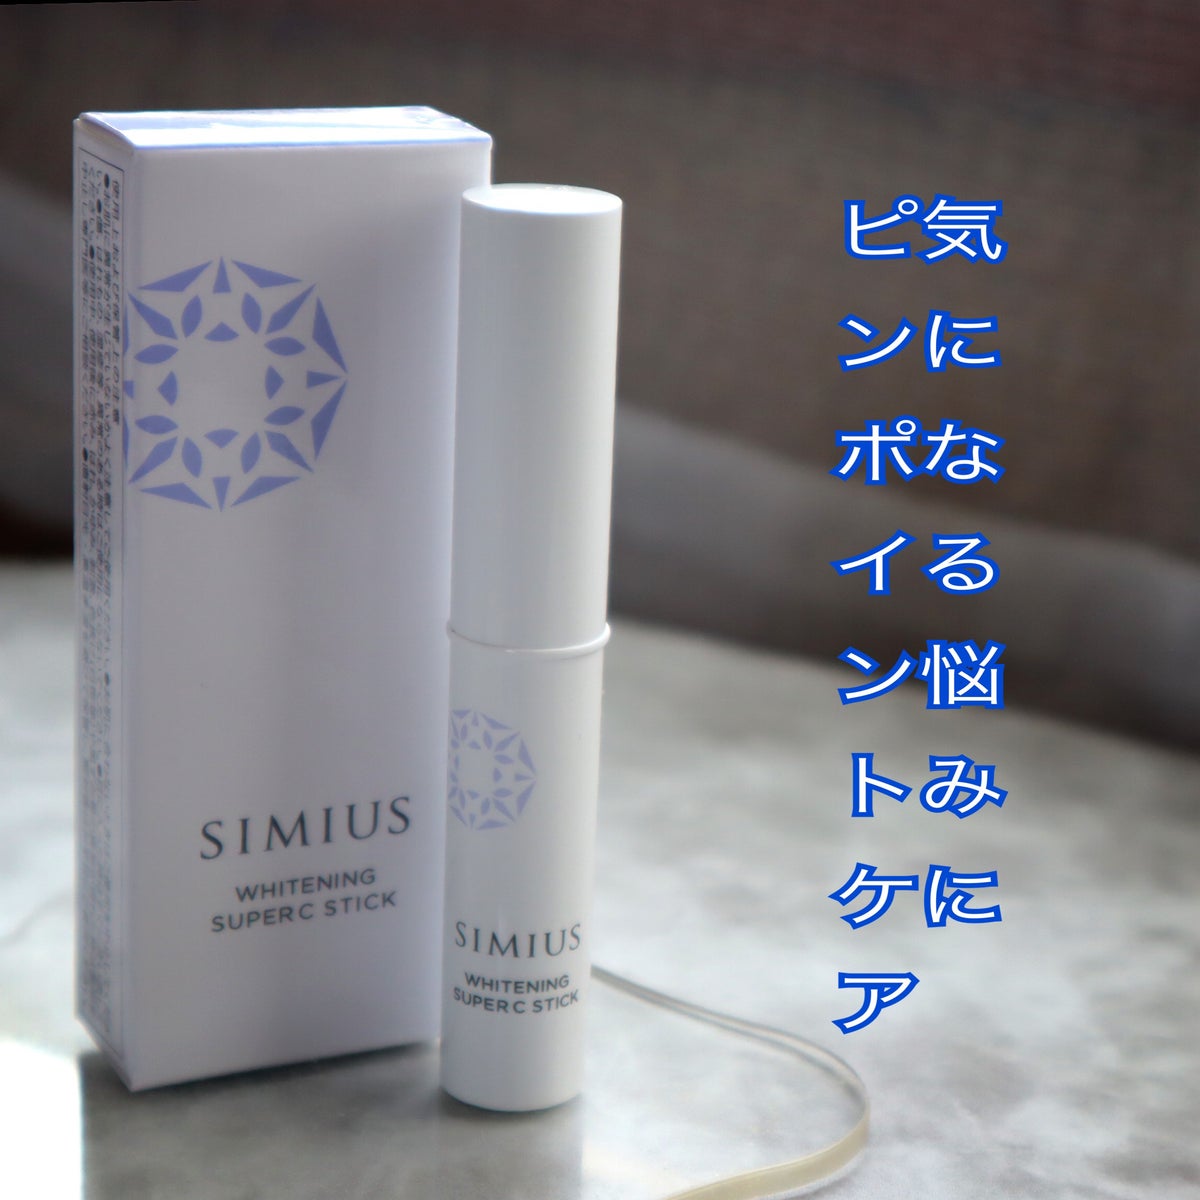 シミウス スーパーCスティック - 美容液